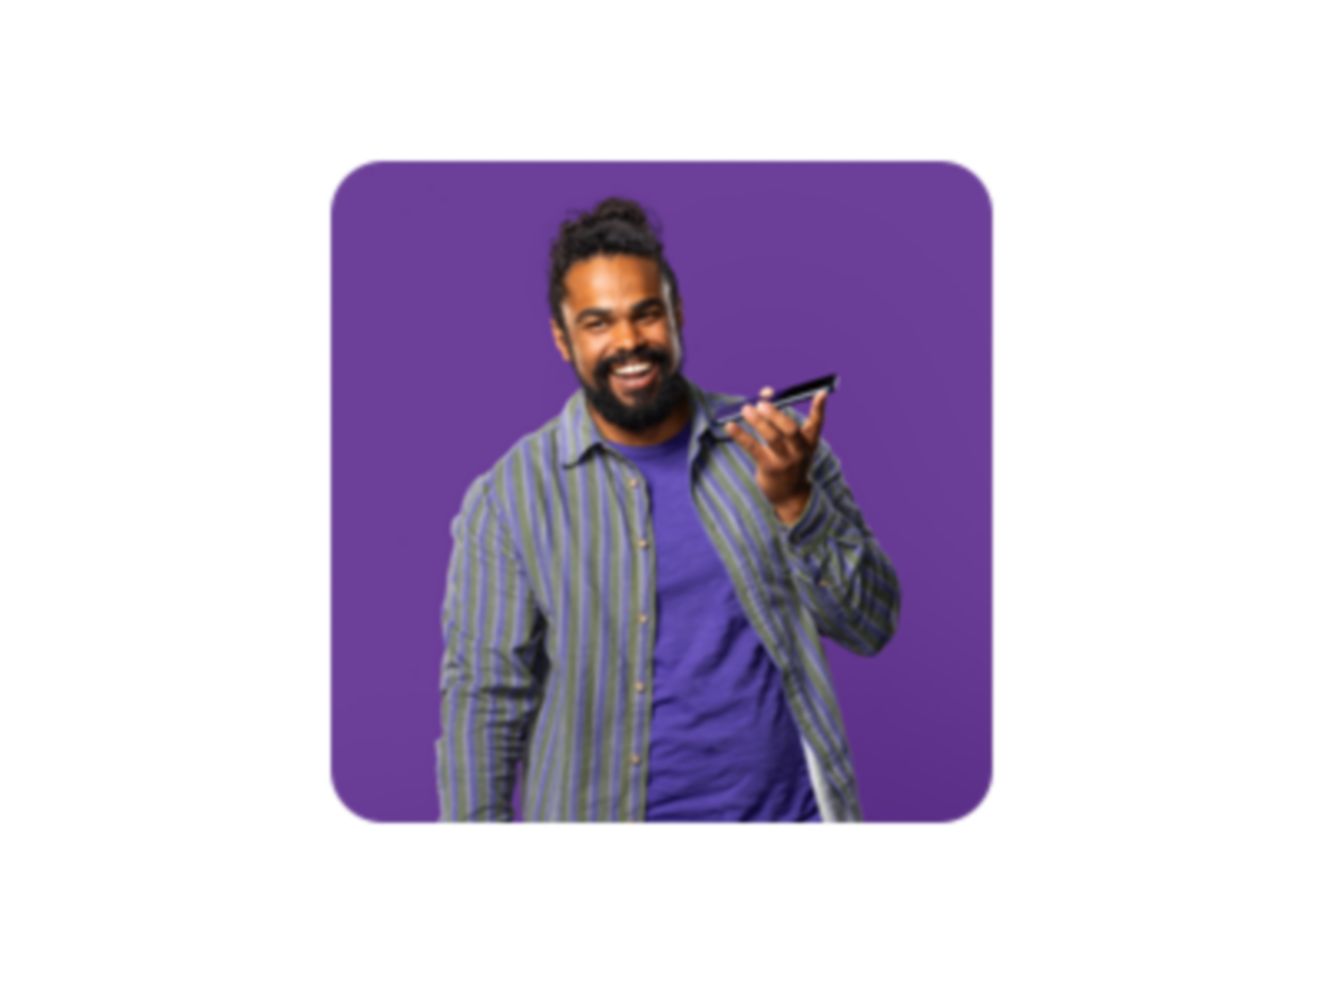 Hombre con ropa informal sonriendo mientras sostiene su smartphone.